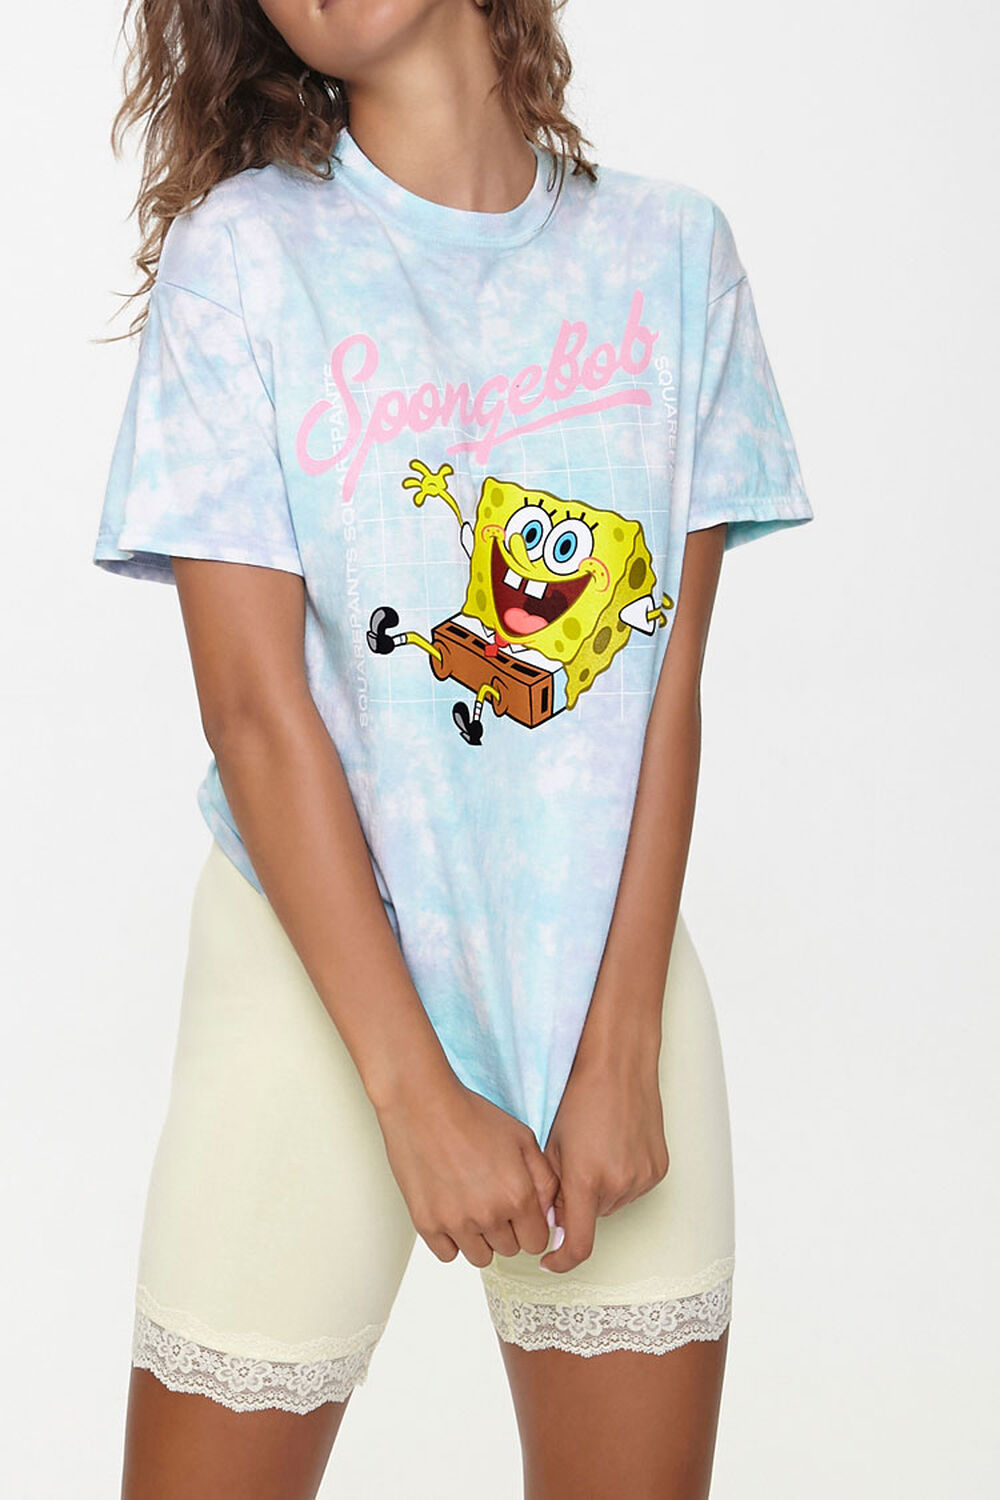 BESTFRIEND FOREVER Spongebob & - Jekasa sportswear